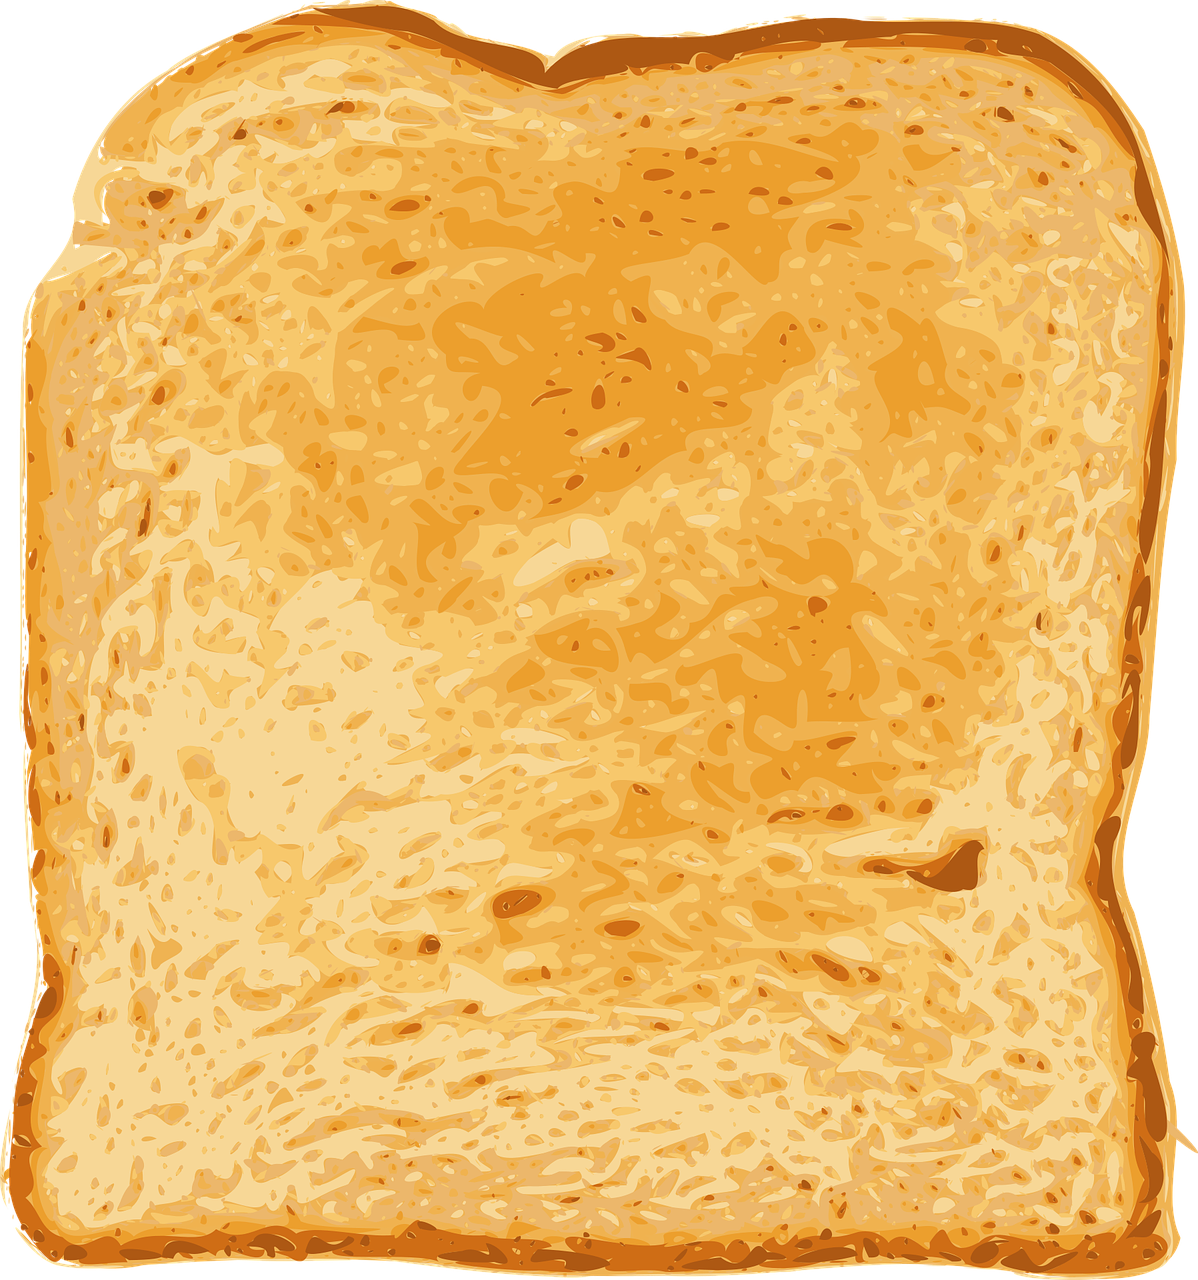 bread toast food free photo